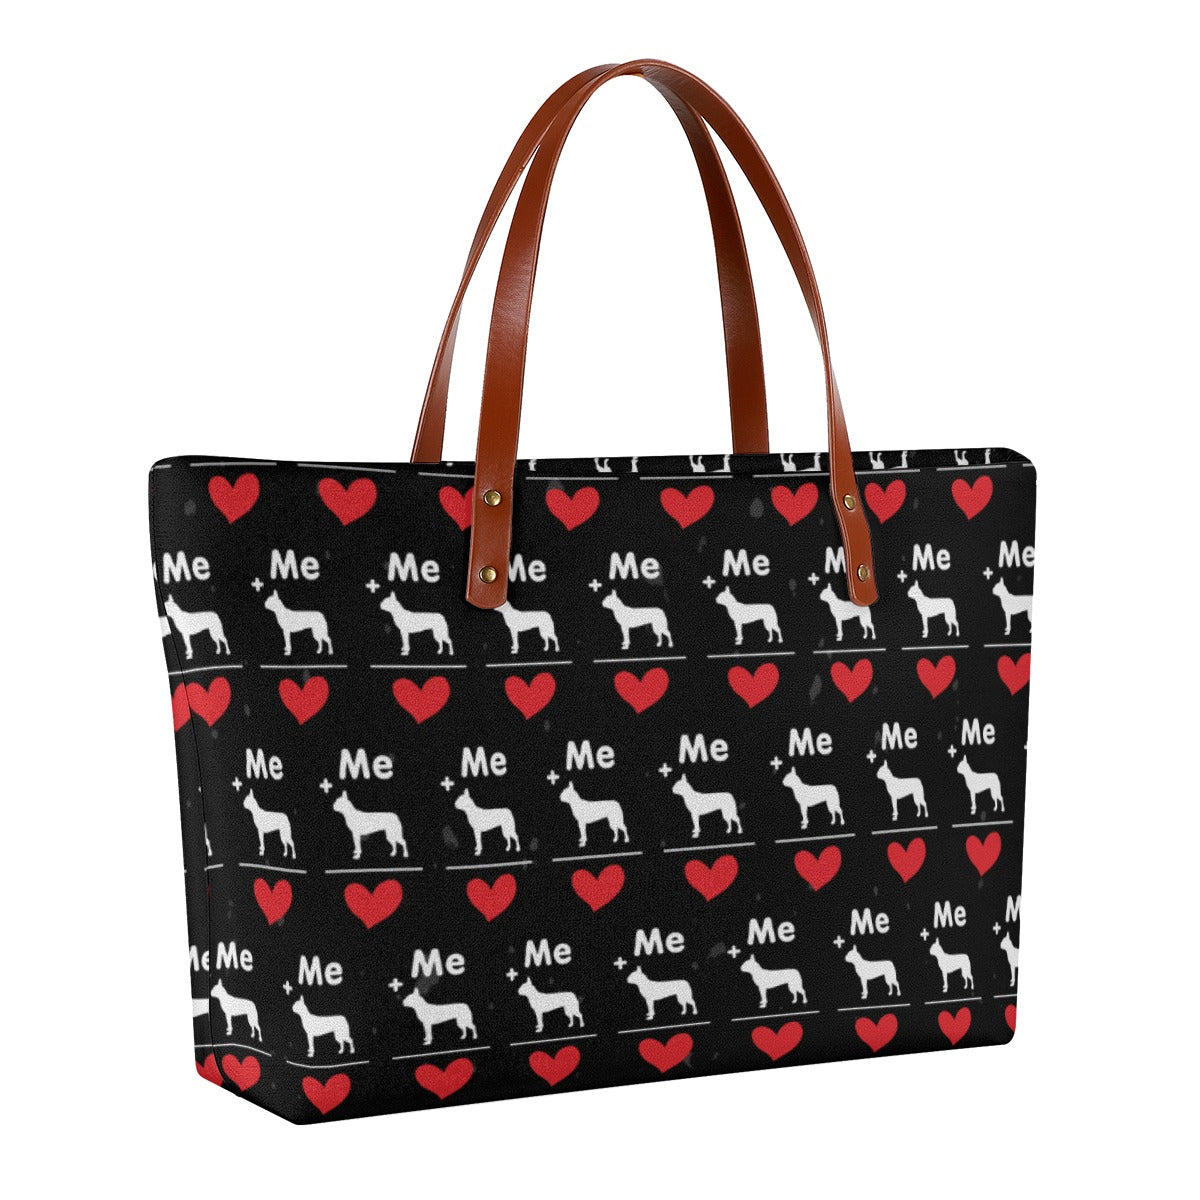 Frankie - Women's Tote Bag for Boston Terrier lovers